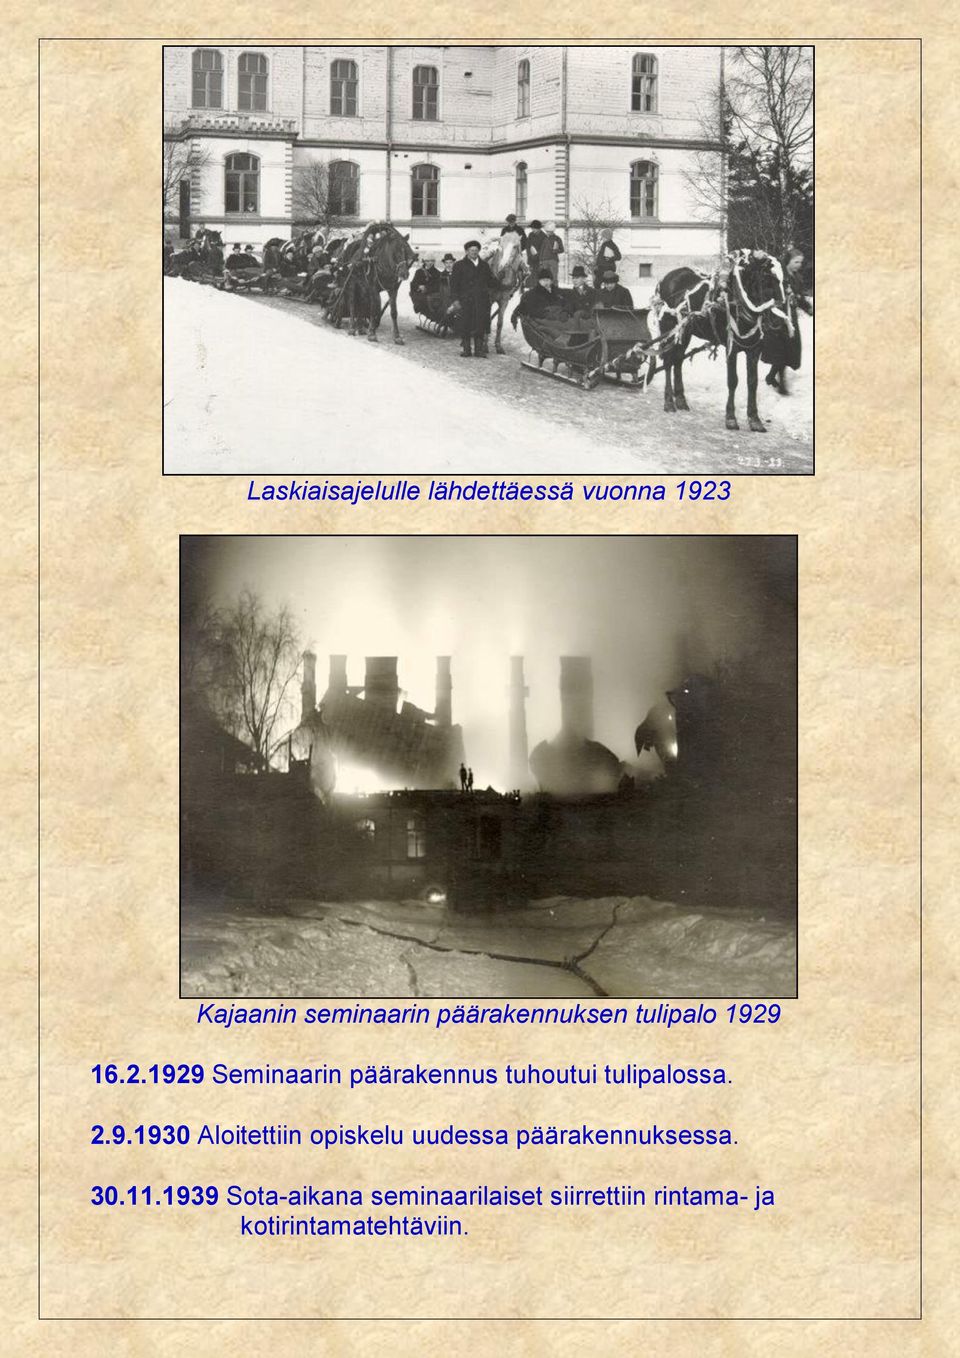 16.2.1929 Seminaarin päärakennus tuhoutui tulipalossa. 2.9.1930 Aloitettiin opiskelu uudessa päärakennuksessa.